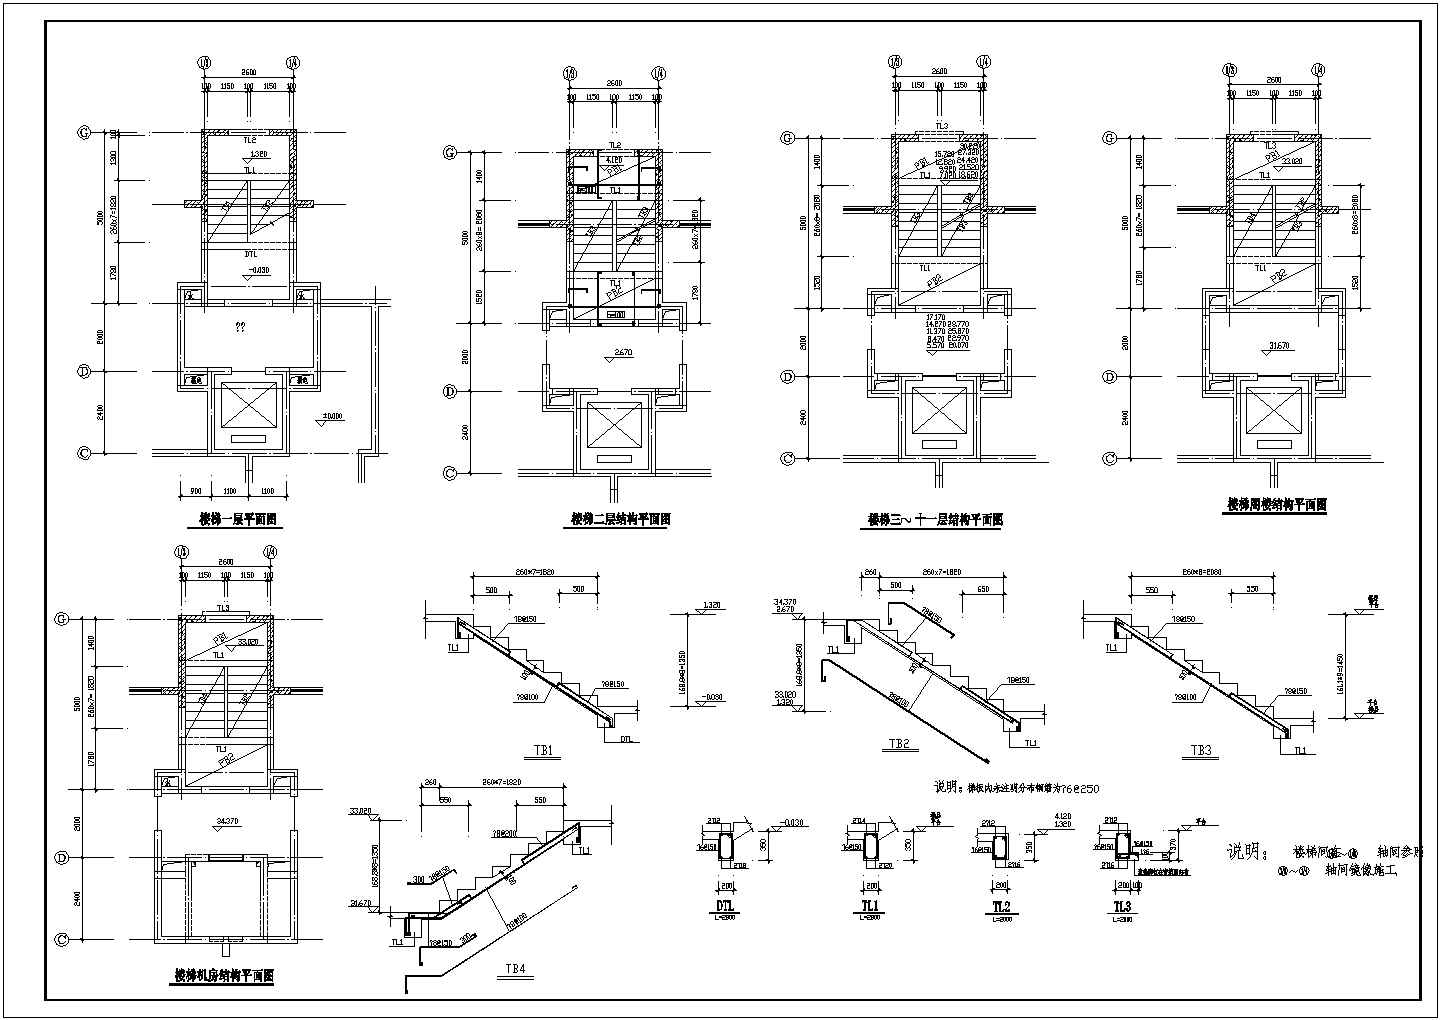 公司办公室房间建筑结构施工设计方案图纸